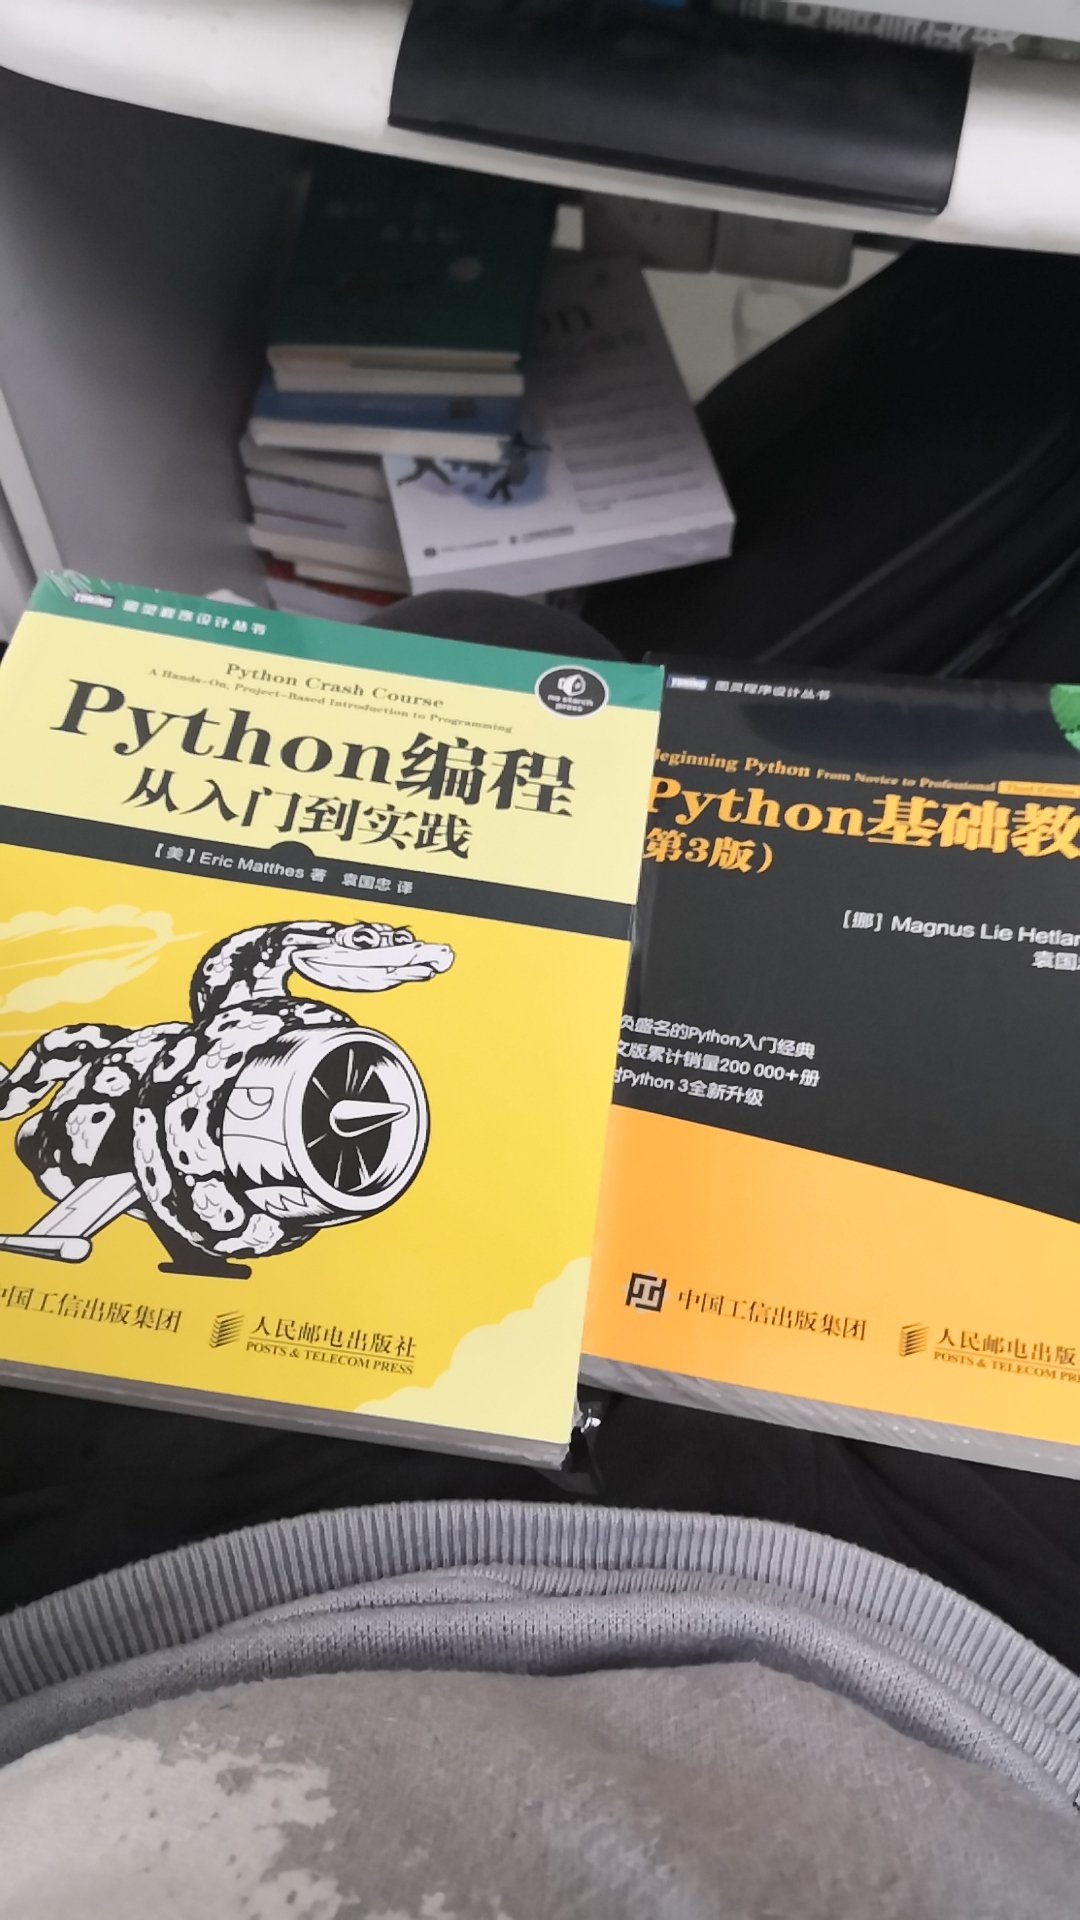 一个不错的讲这些机器学习的书，主要是讲一些基本的技巧，感觉还行吧，比较重，比较厚！一口气买了不少书，希望可以好好学习掌握python，希望这些书都能有用！